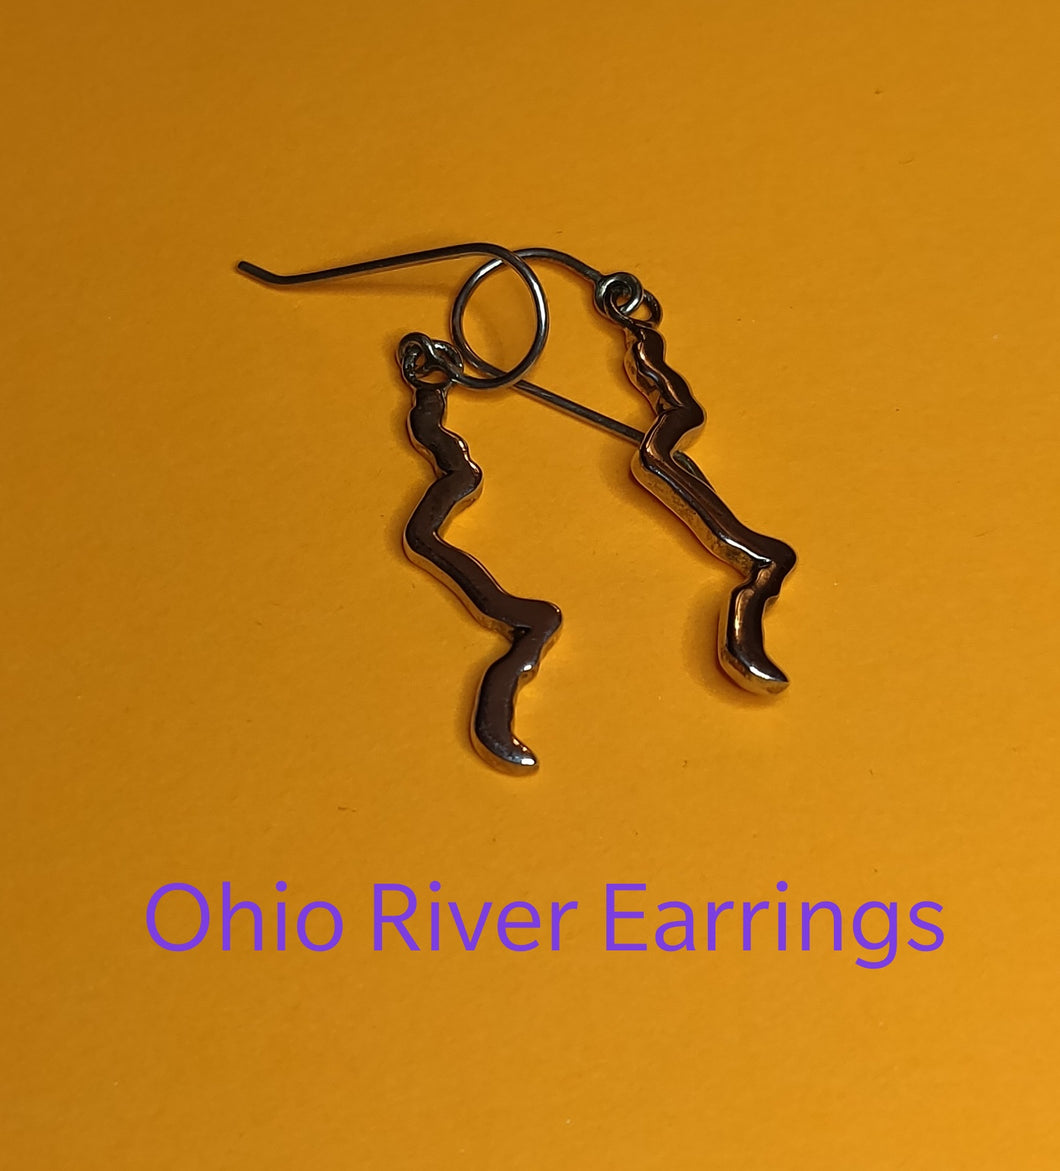 Ohio River Earrings